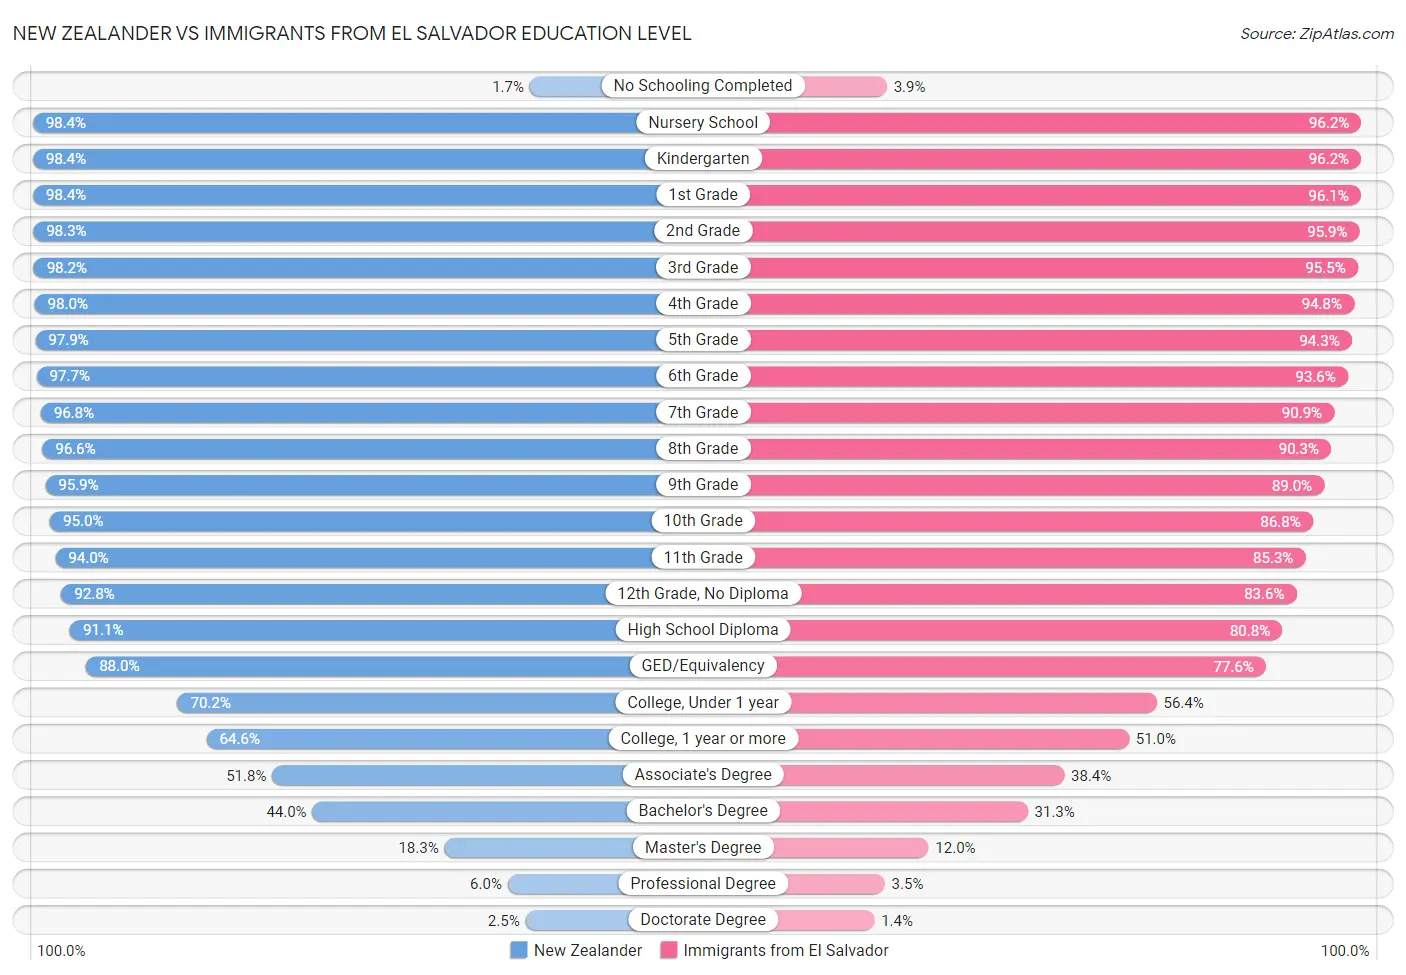 New Zealander vs Immigrants from El Salvador Education Level